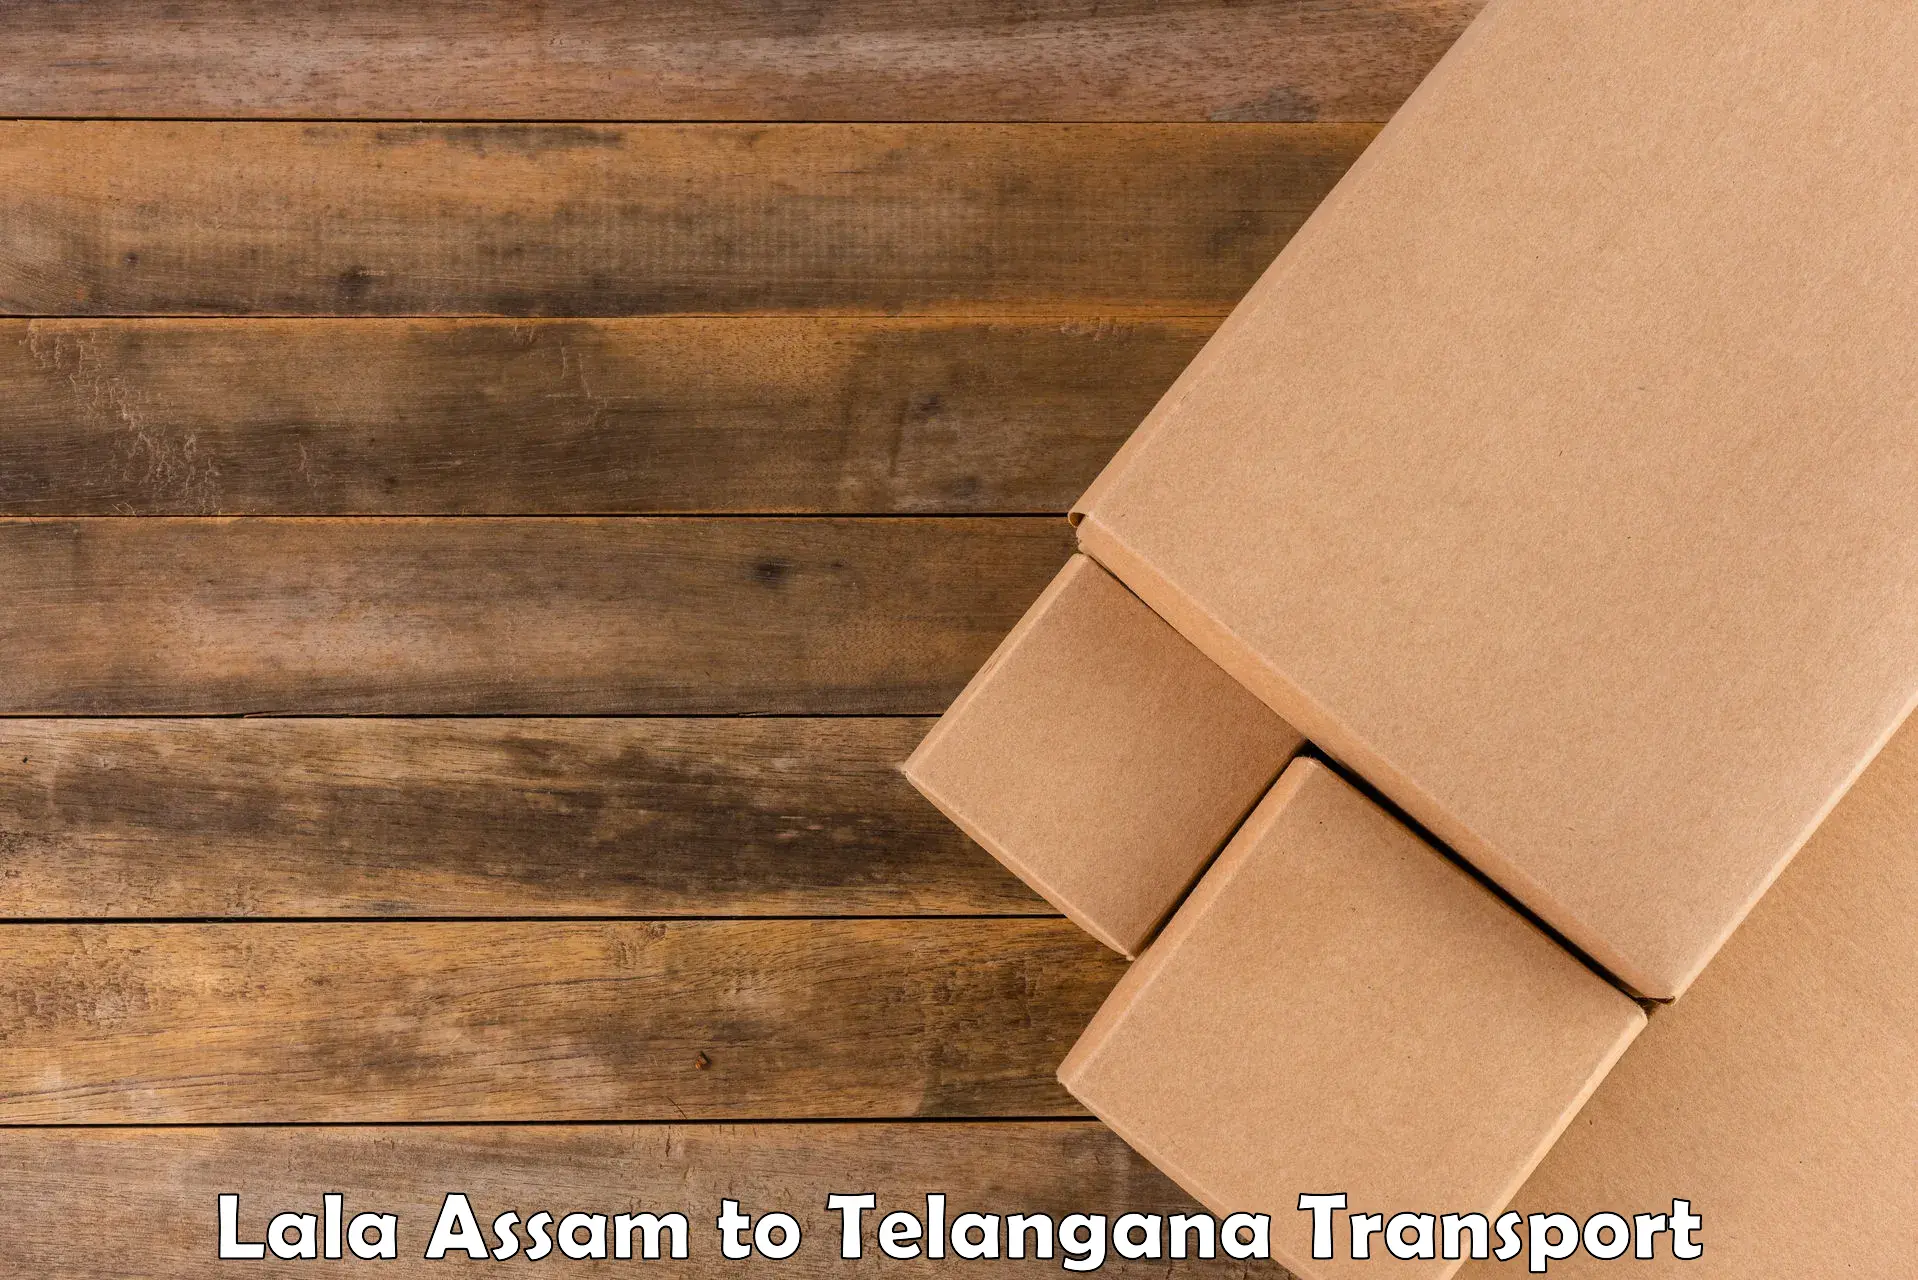 Logistics transportation services Lala Assam to Tadoor